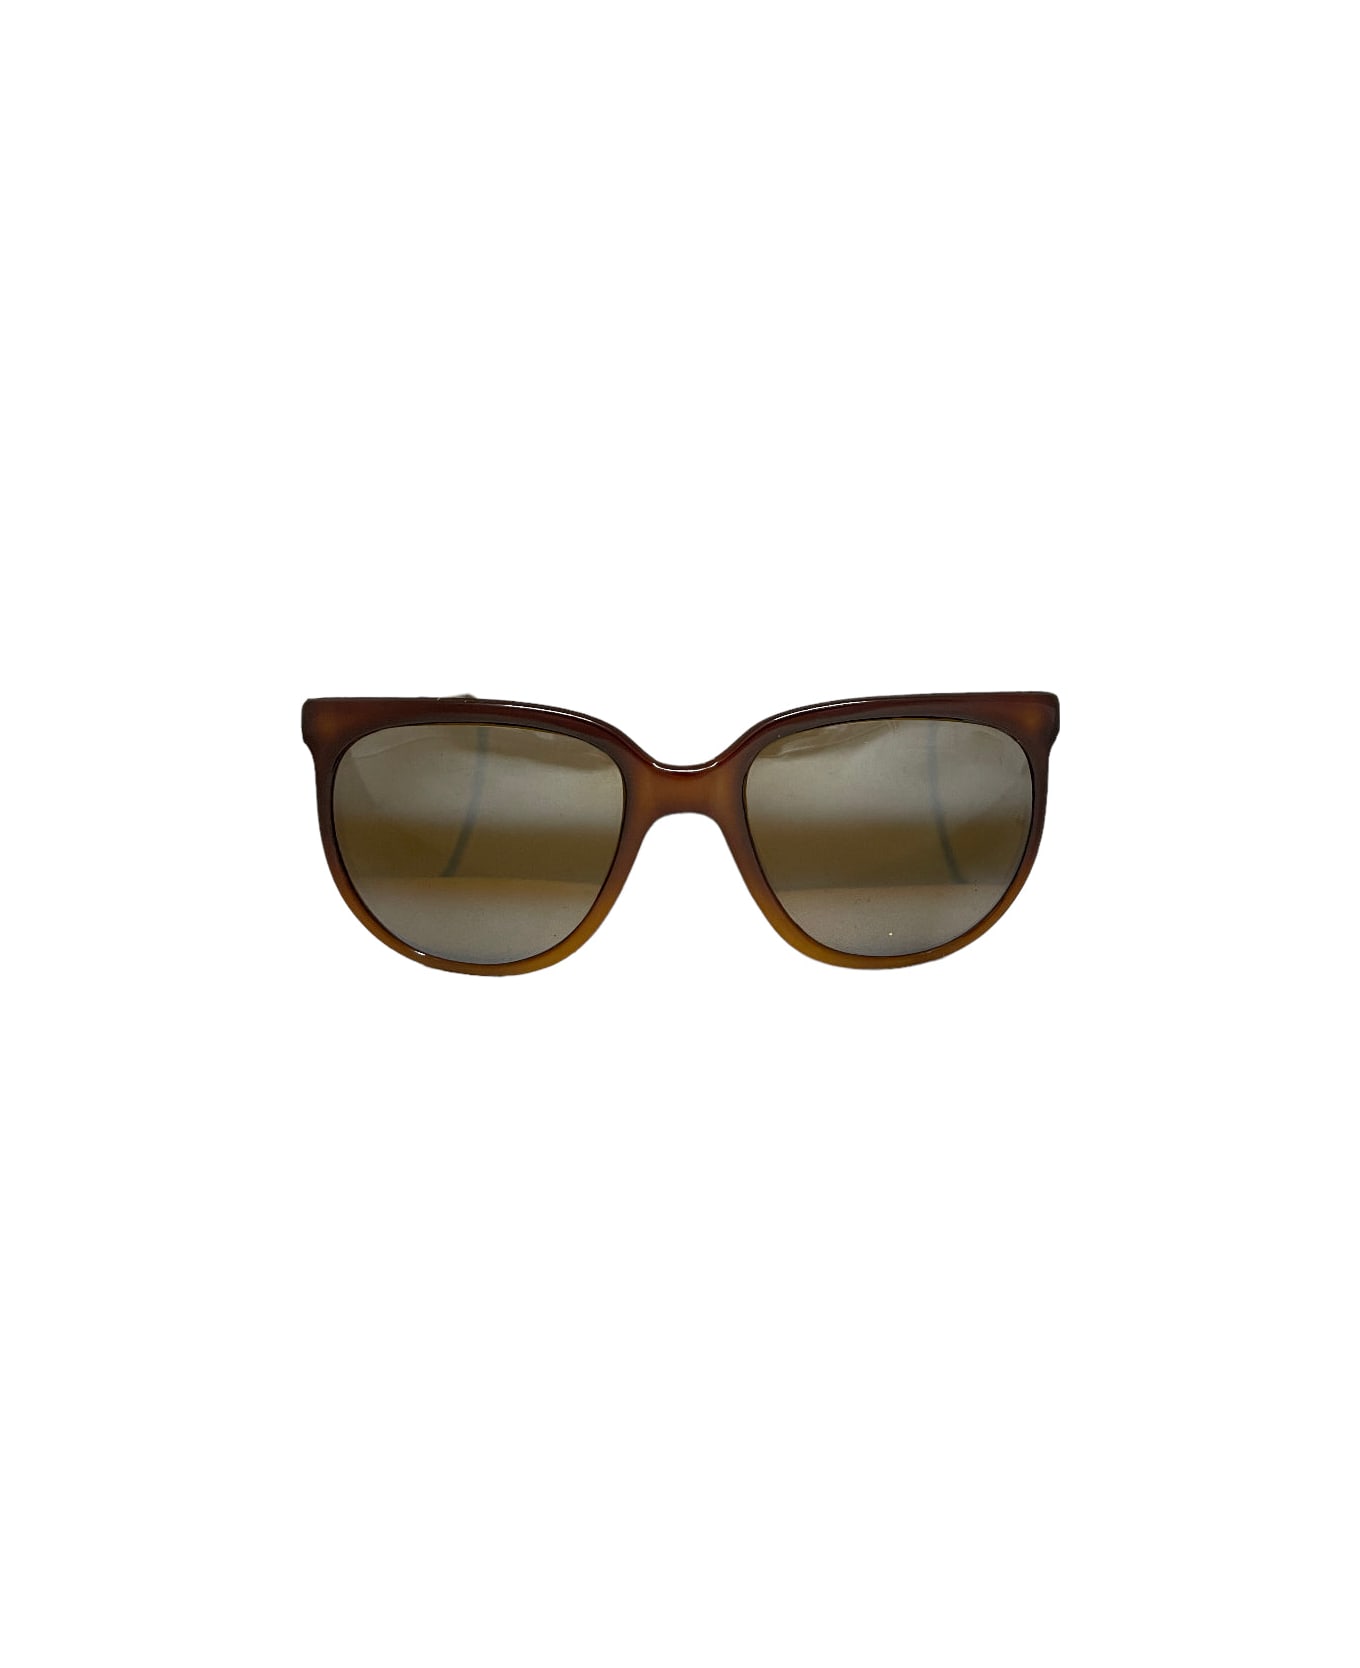 Vuarnet Pouilloux - Brown Sunglasses